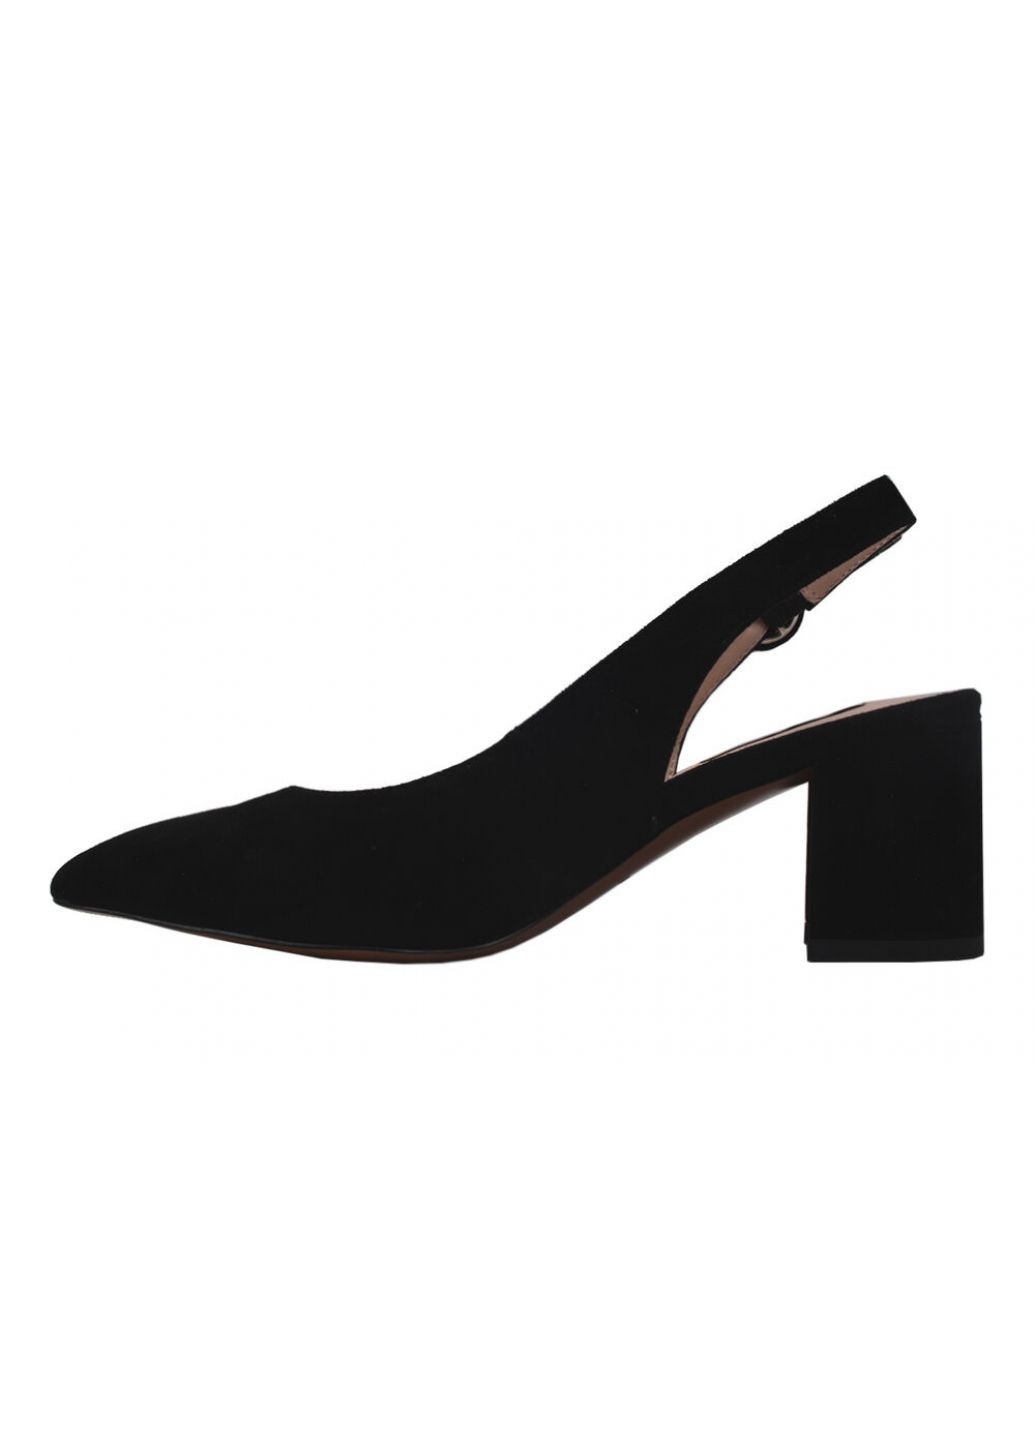 Туфли женские натуральная замша, цвет черный Anemone